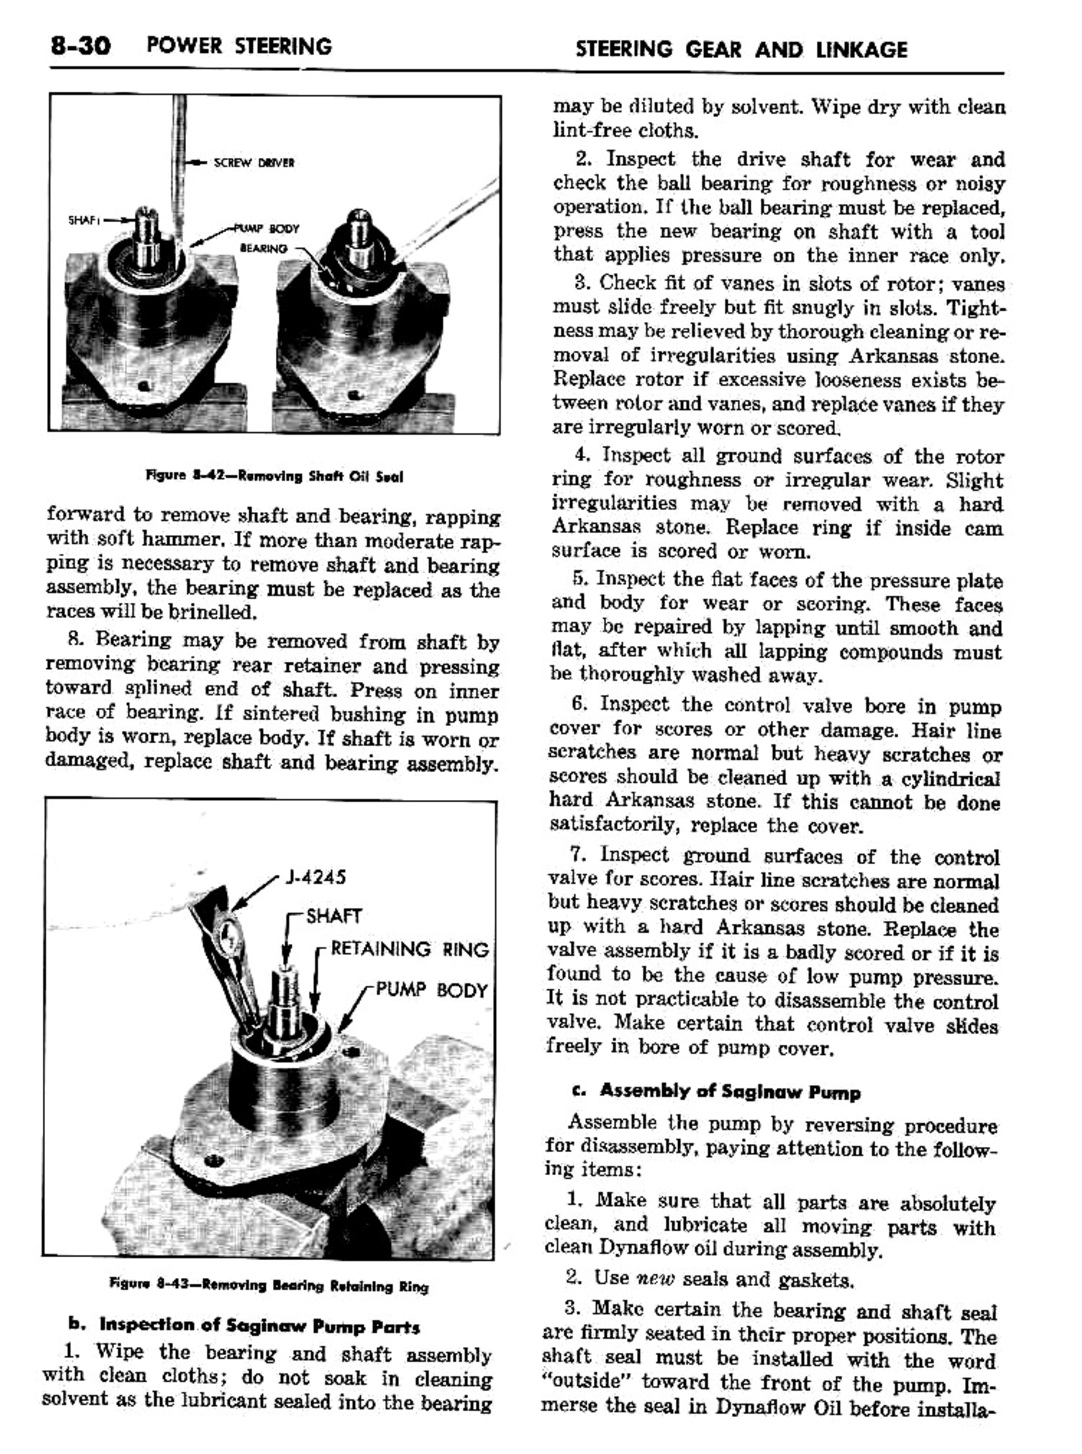 n_09 1957 Buick Shop Manual - Steering-030-030.jpg